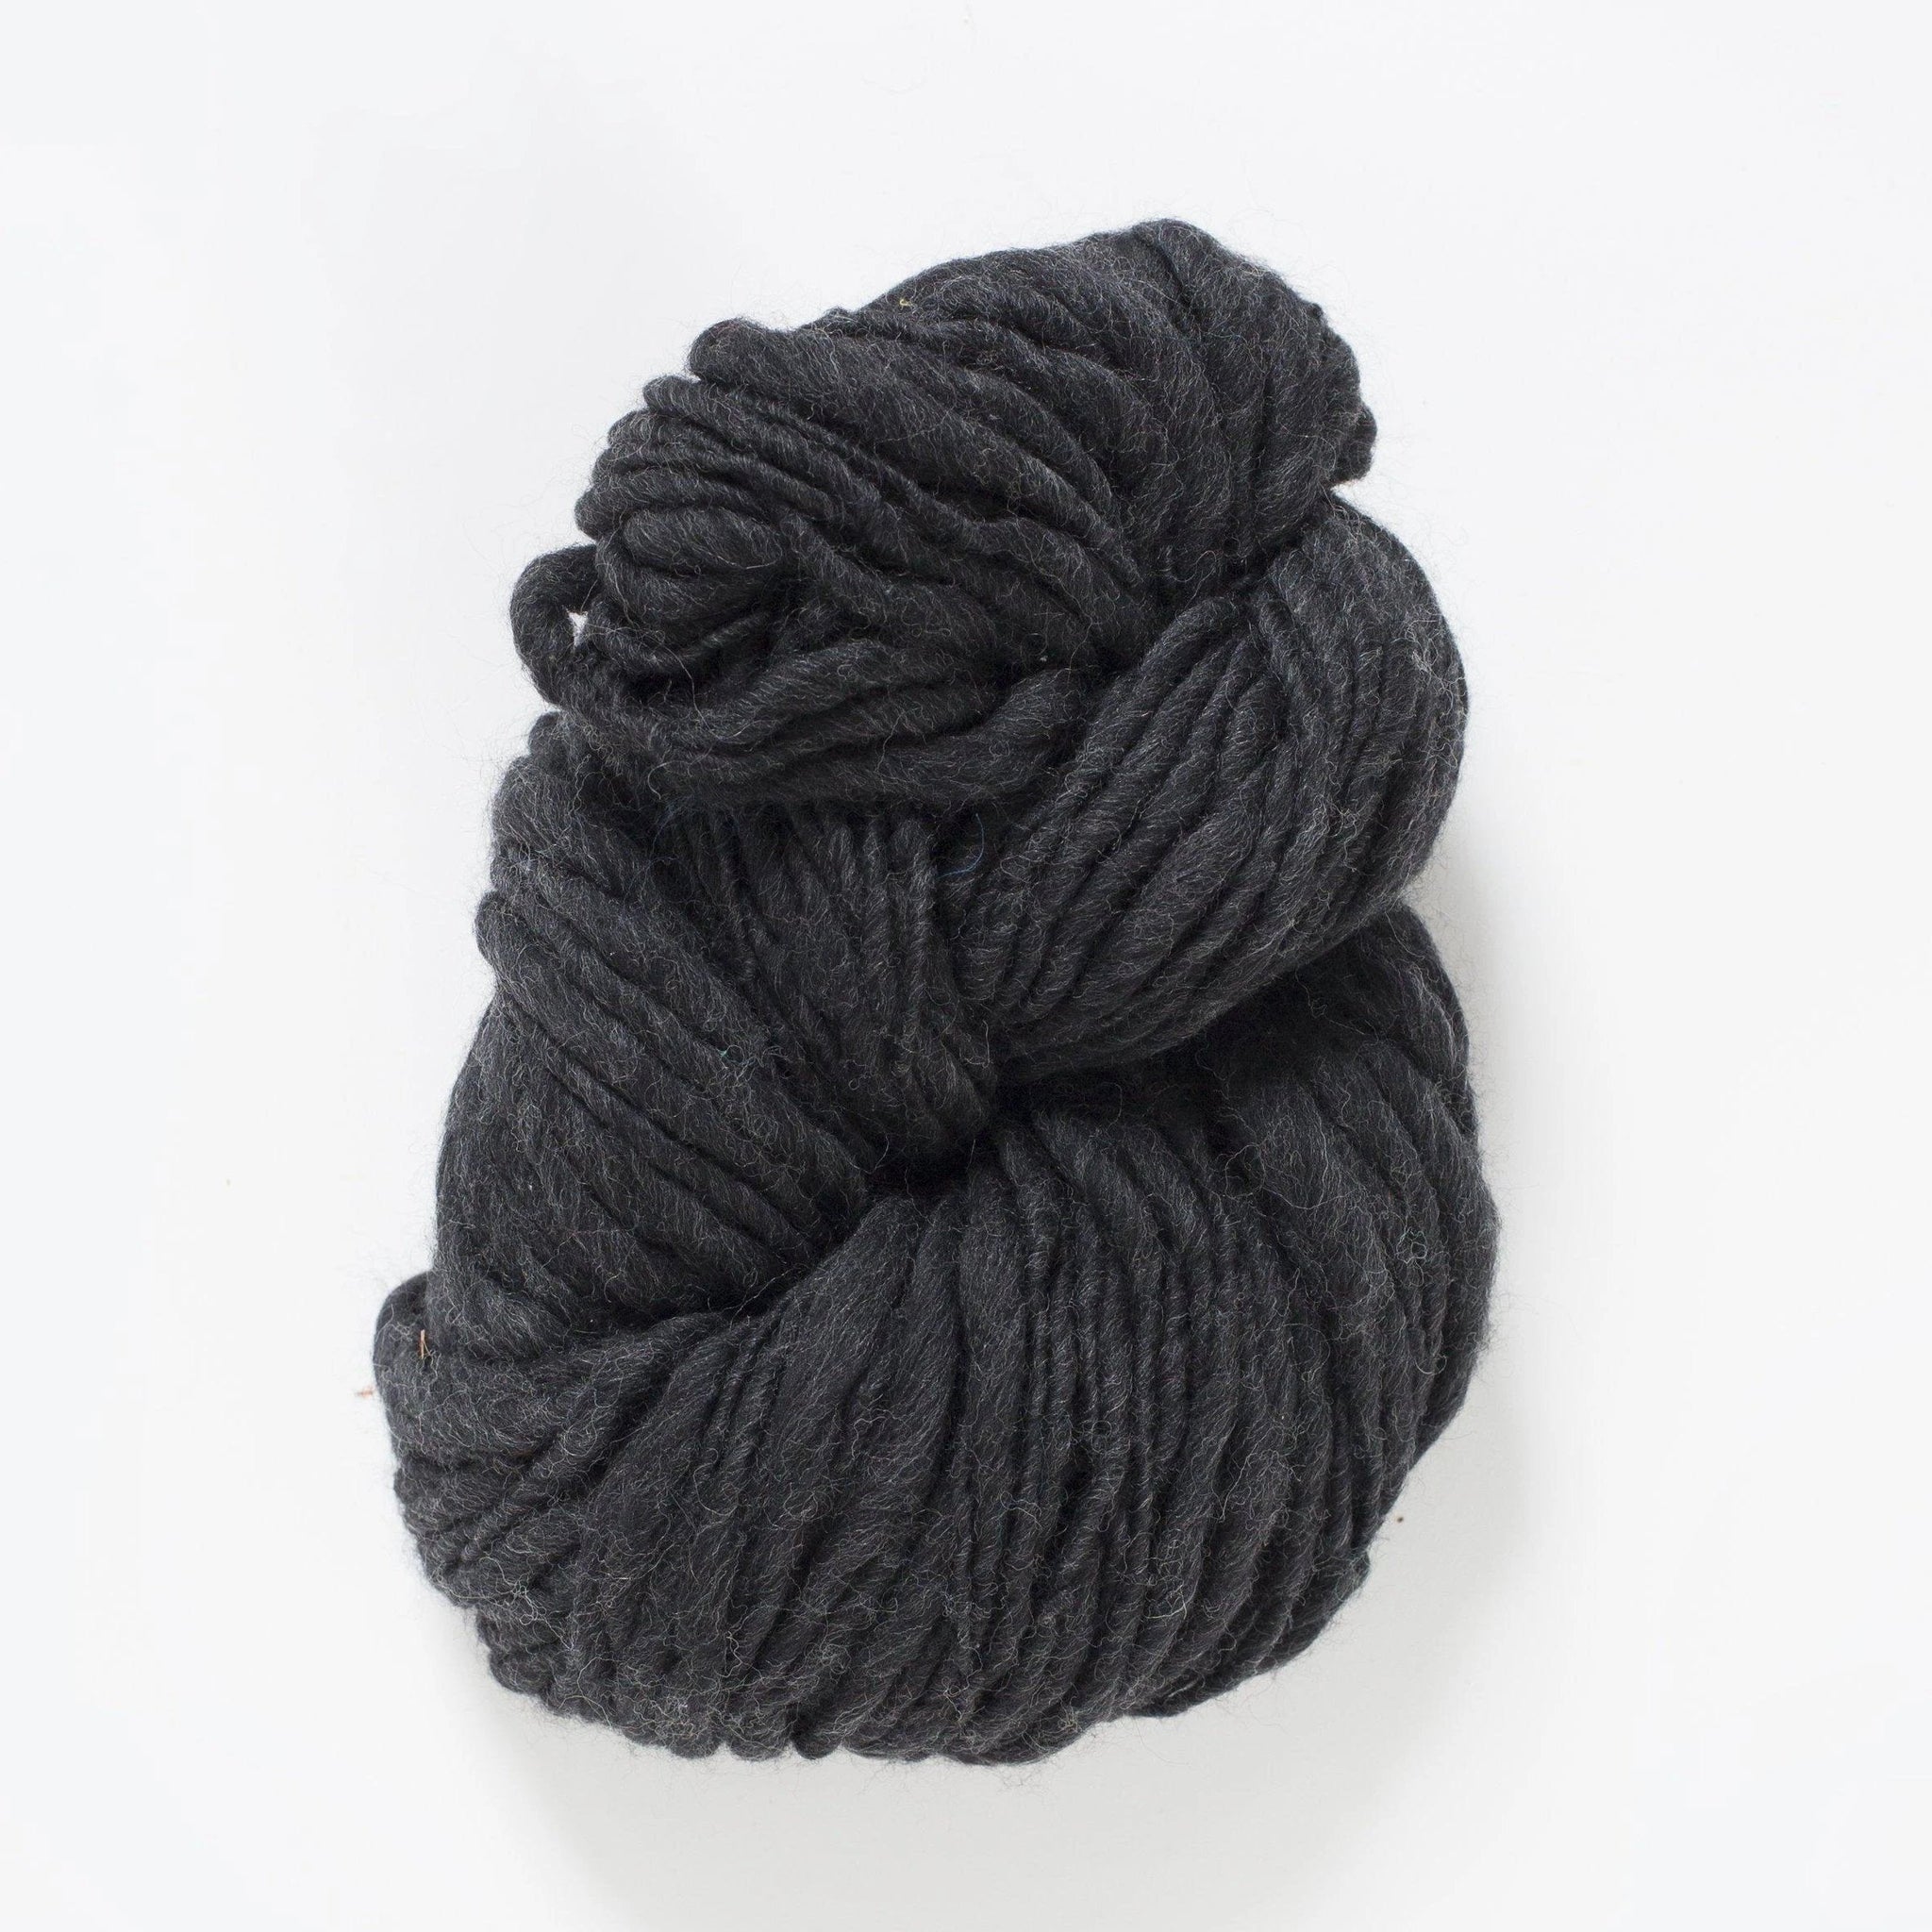 Super Chunky Knit Yarn Sale Thick Arm Knitting Yarn Merino Wool Yarn Giant  Jumbo Yarn Bulky Yarn for Arm Knit Felting or Spinning 